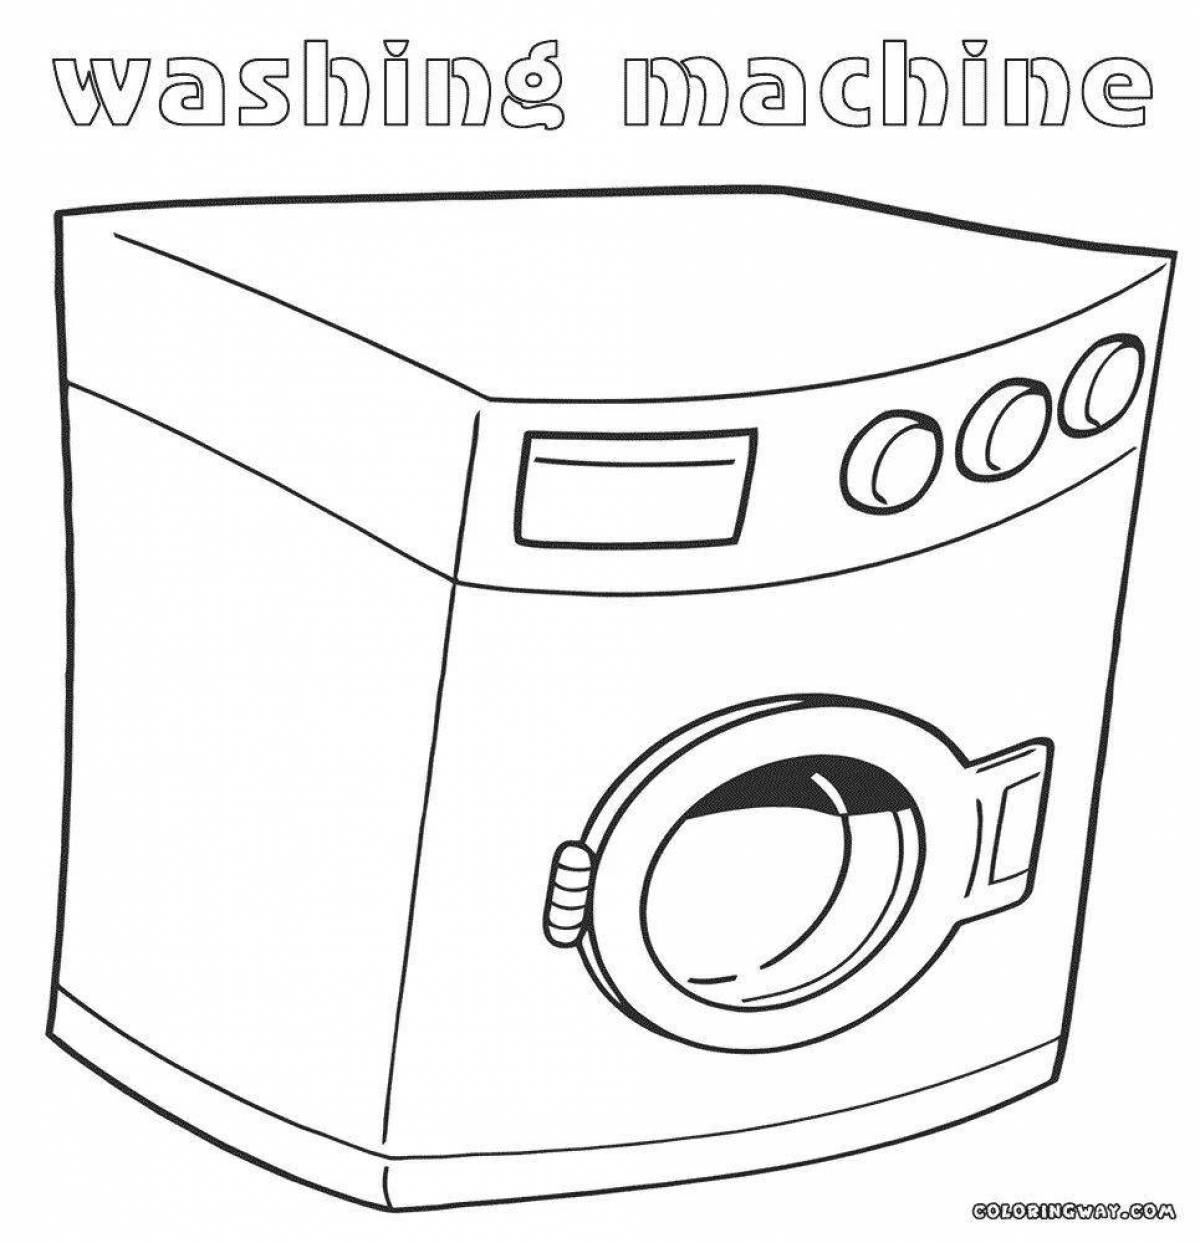 Playful washing